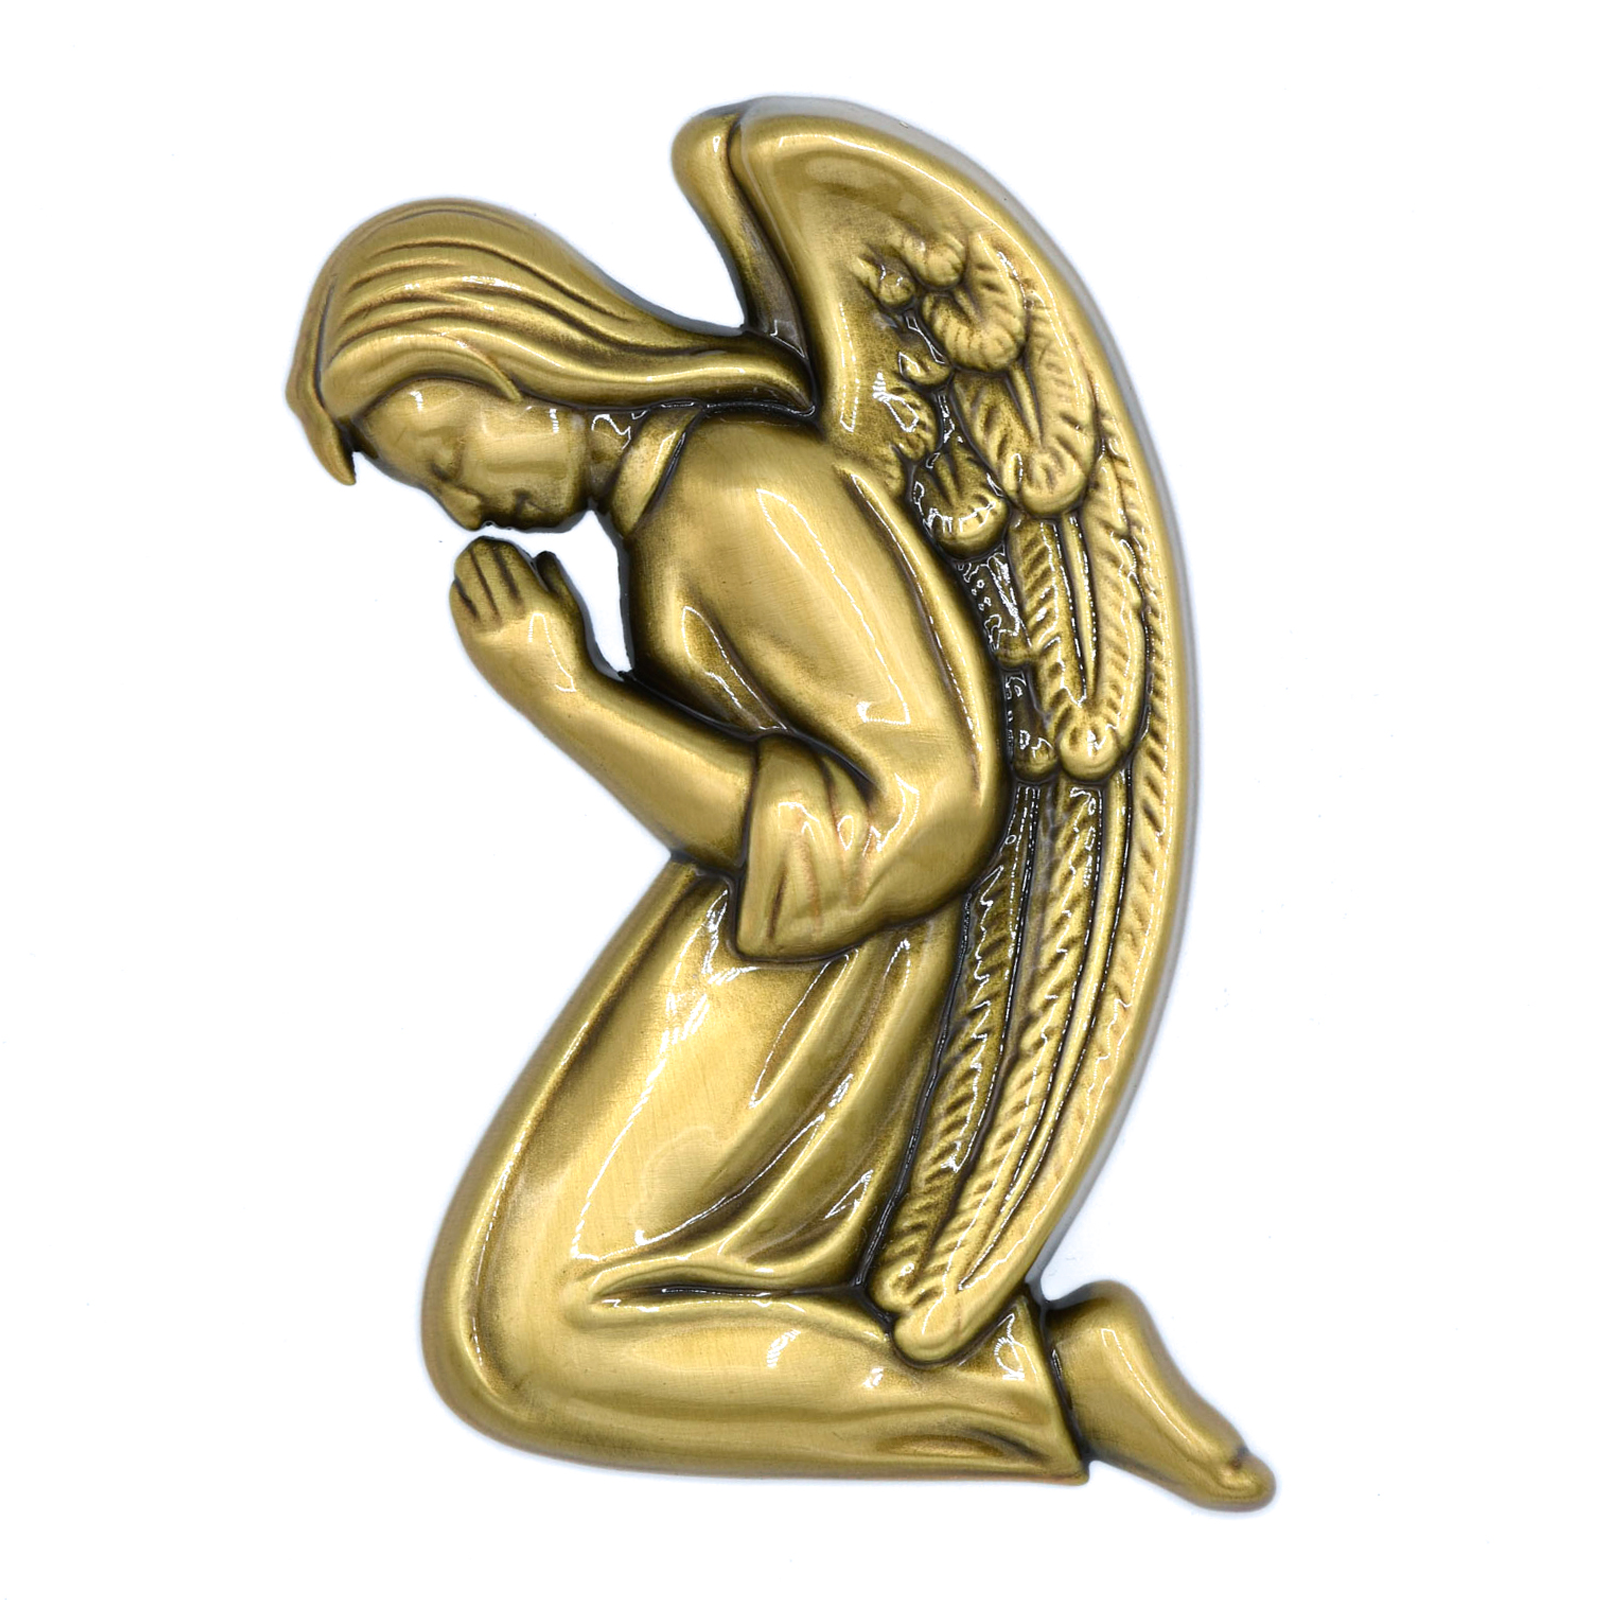 Kneeling Angel (facing left) 3″ x 4.5″